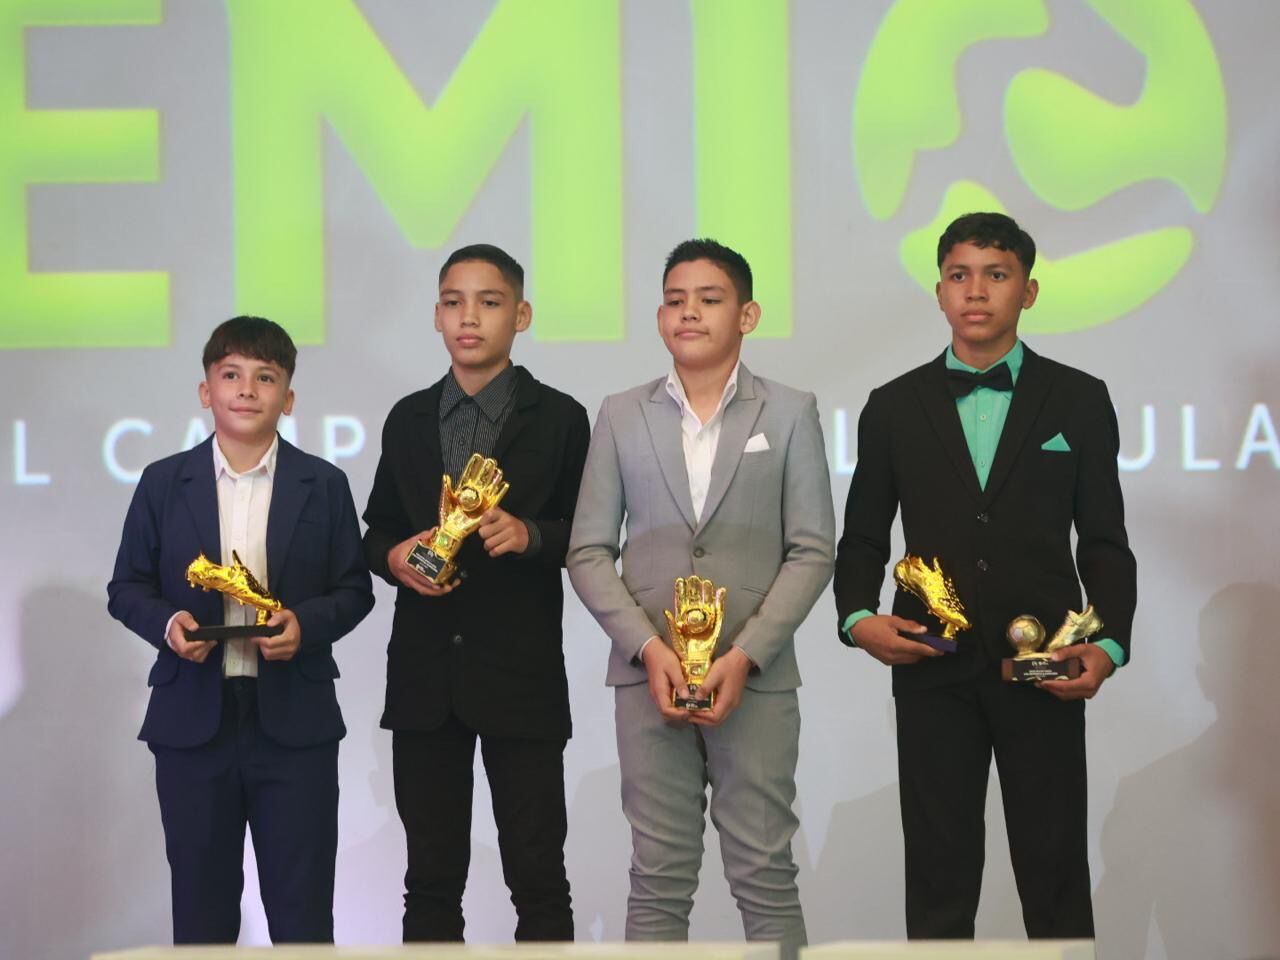 El santista Snaider Saborío, así como los liguistas Emmanuel Bonilla, Gabriel Rodríguez y David Molina recibieron los premios en U-12.